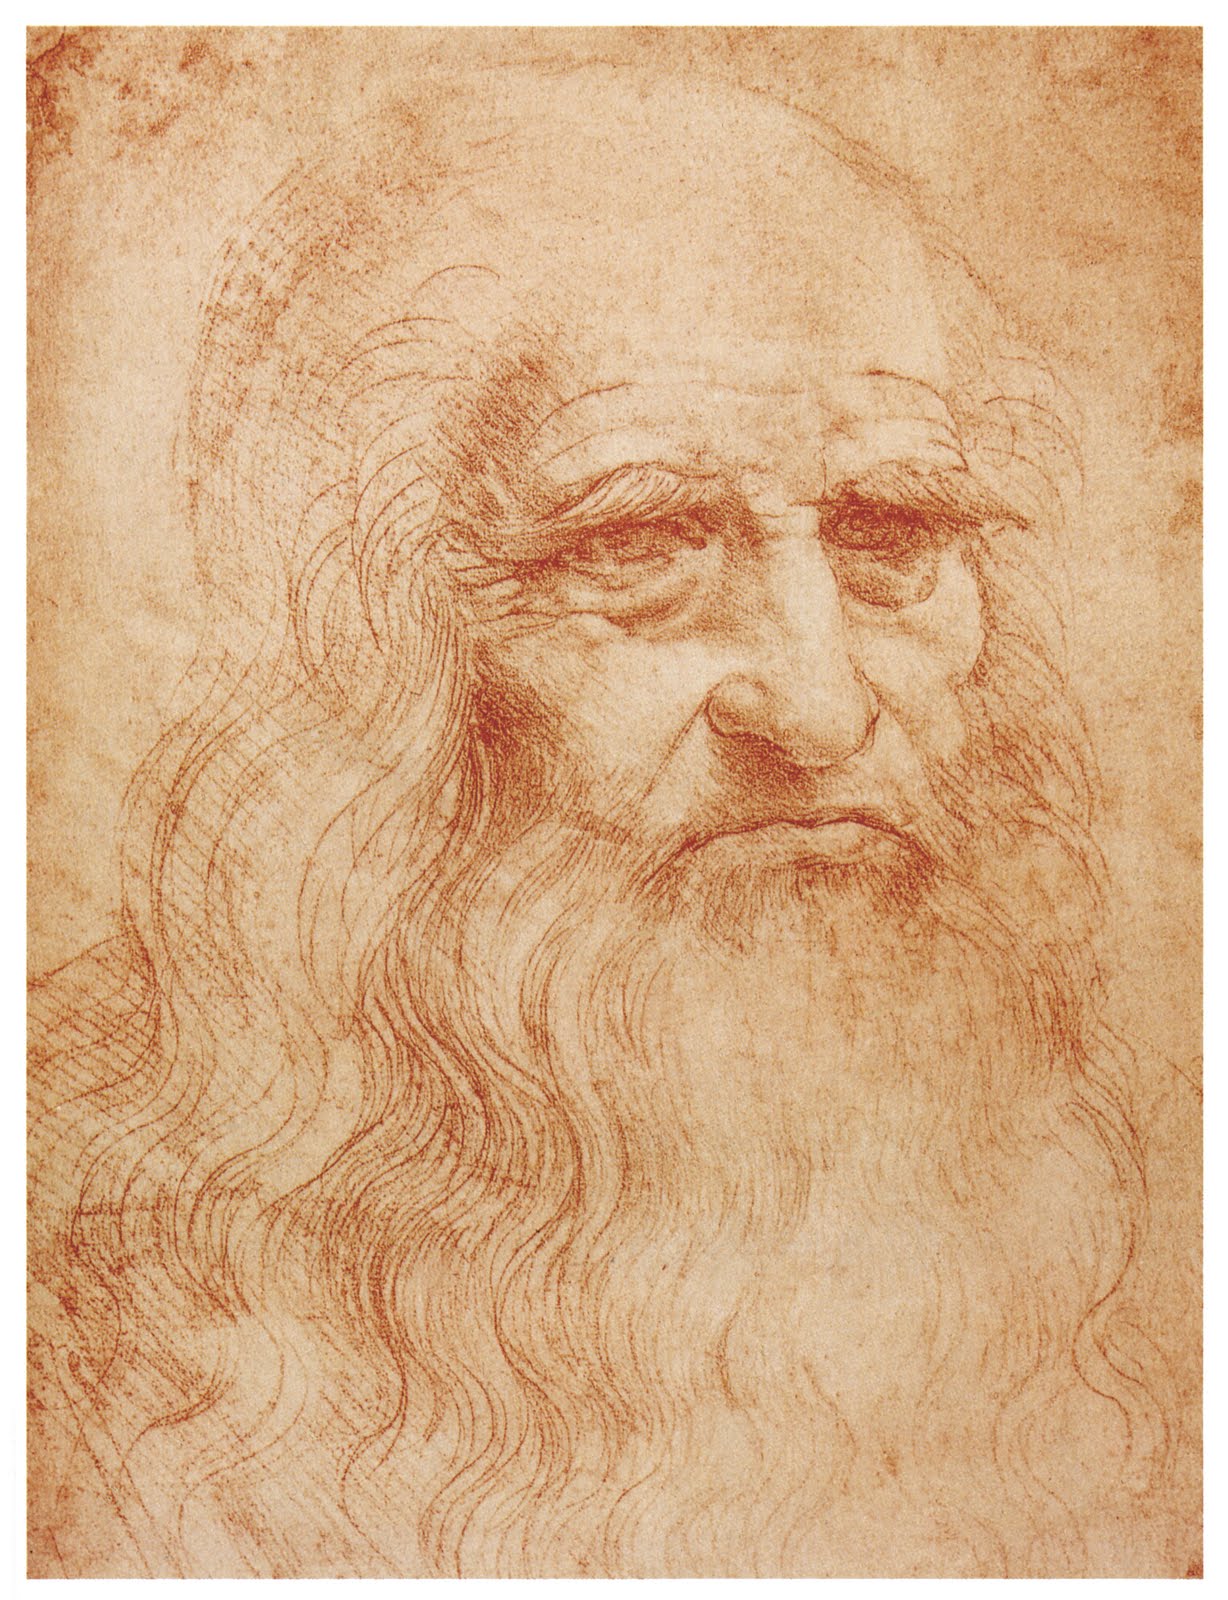 Da Vinci Paints Drawings HD Wallpaper In